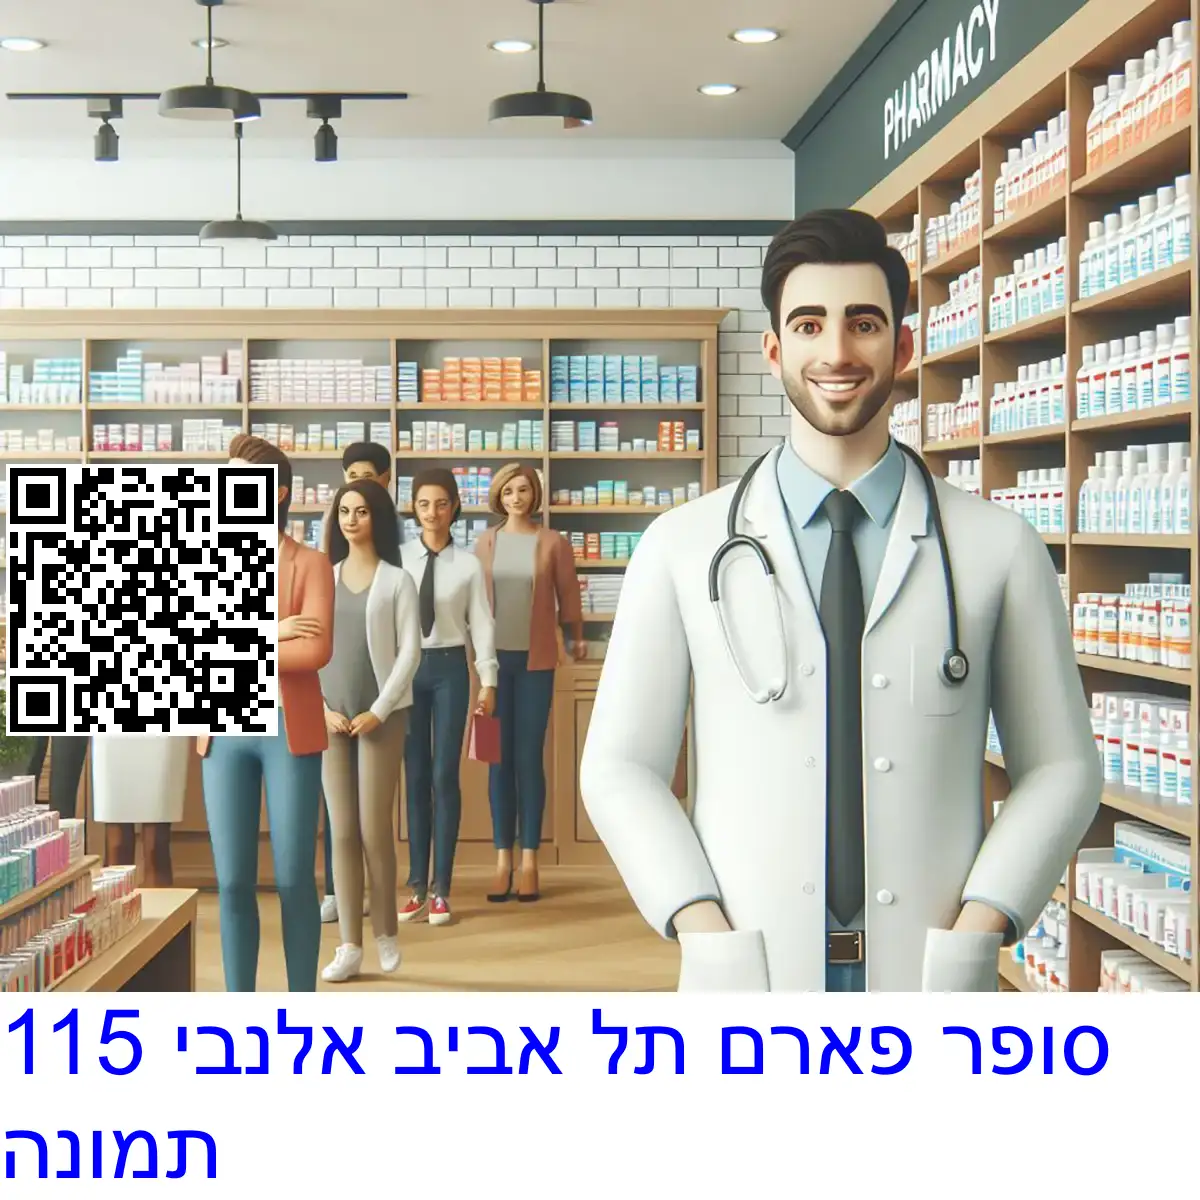 סופר פארם תל אביב אלנבי 115